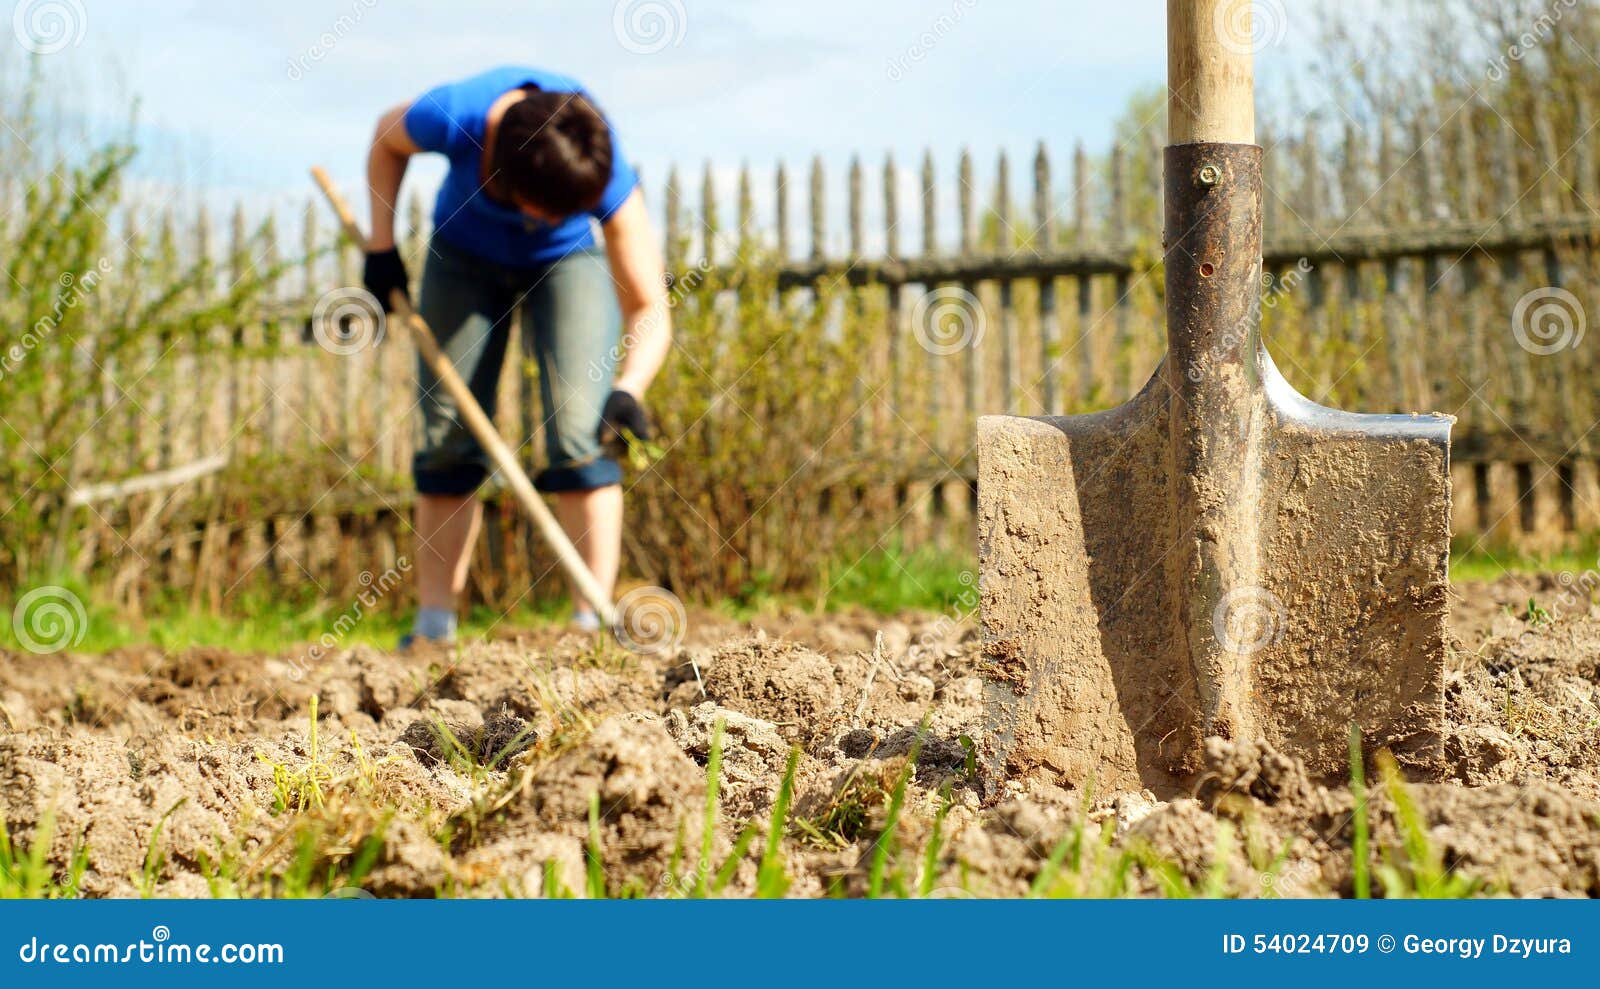 Копать лопатой. Девушка с лопатой копает. Девушка копает землю. Лопата в земле.